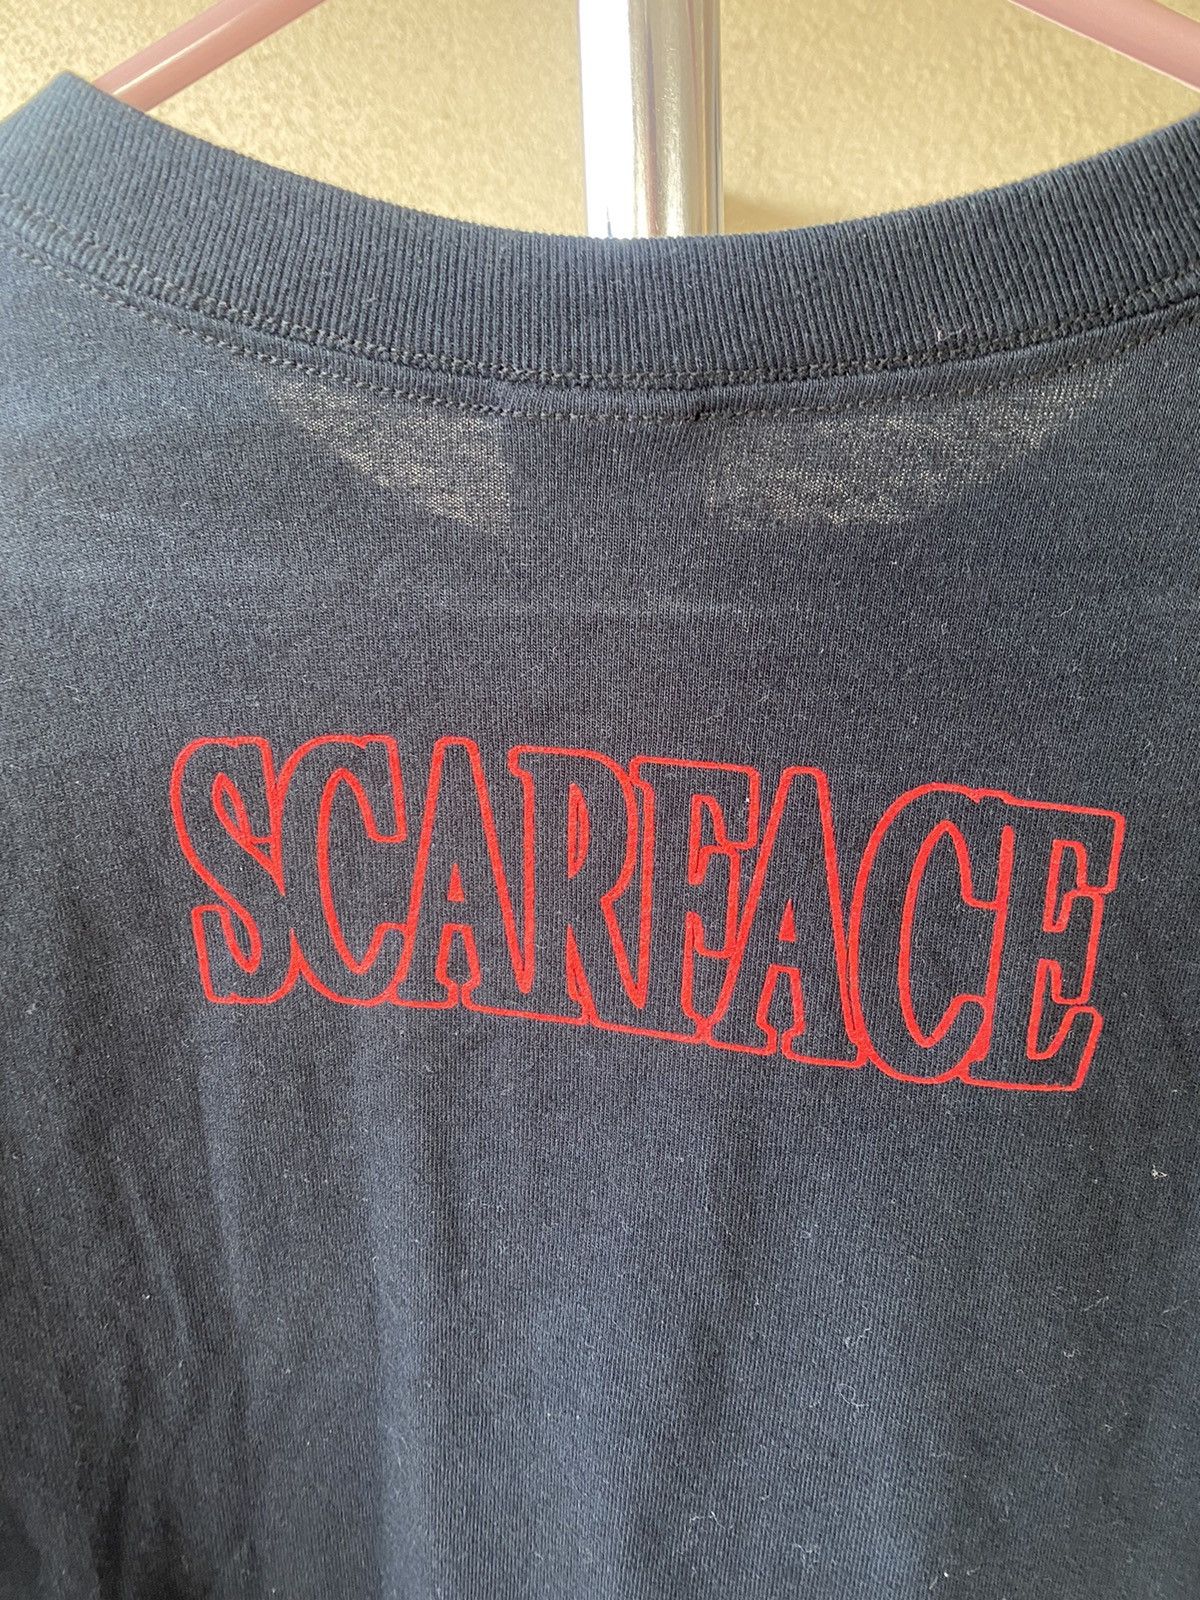 Movie Scareface shirt Size US L / EU 52-54 / 3 - 5 Preview